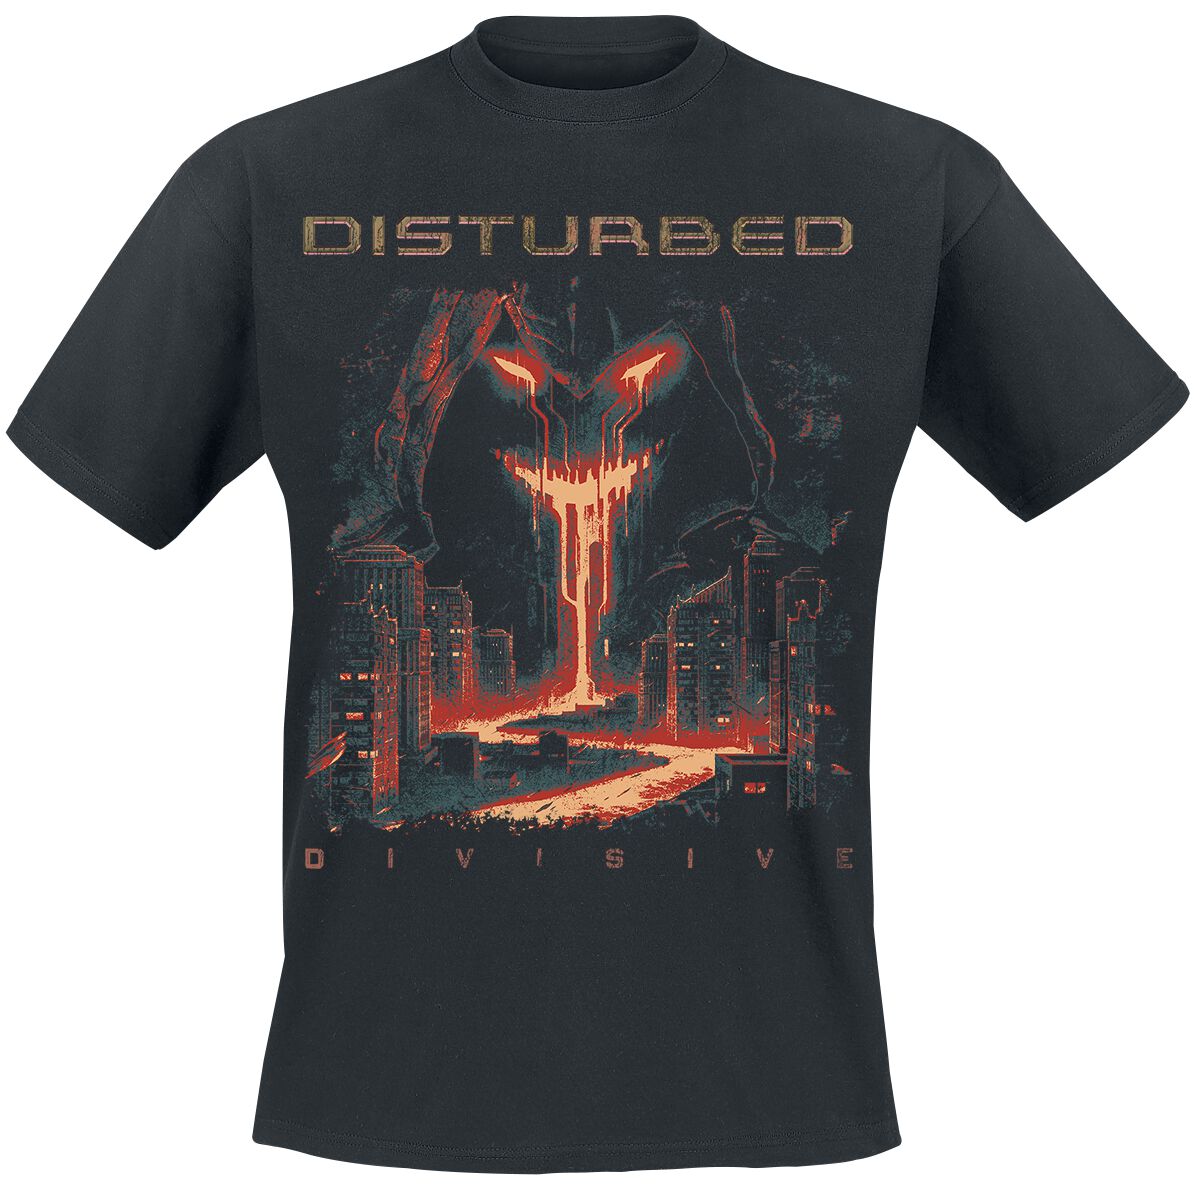 Disturbed T-Shirt - Divisive - S bis 3XL - für Männer - Größe 3XL - schwarz  - Lizenziertes Merchandise!